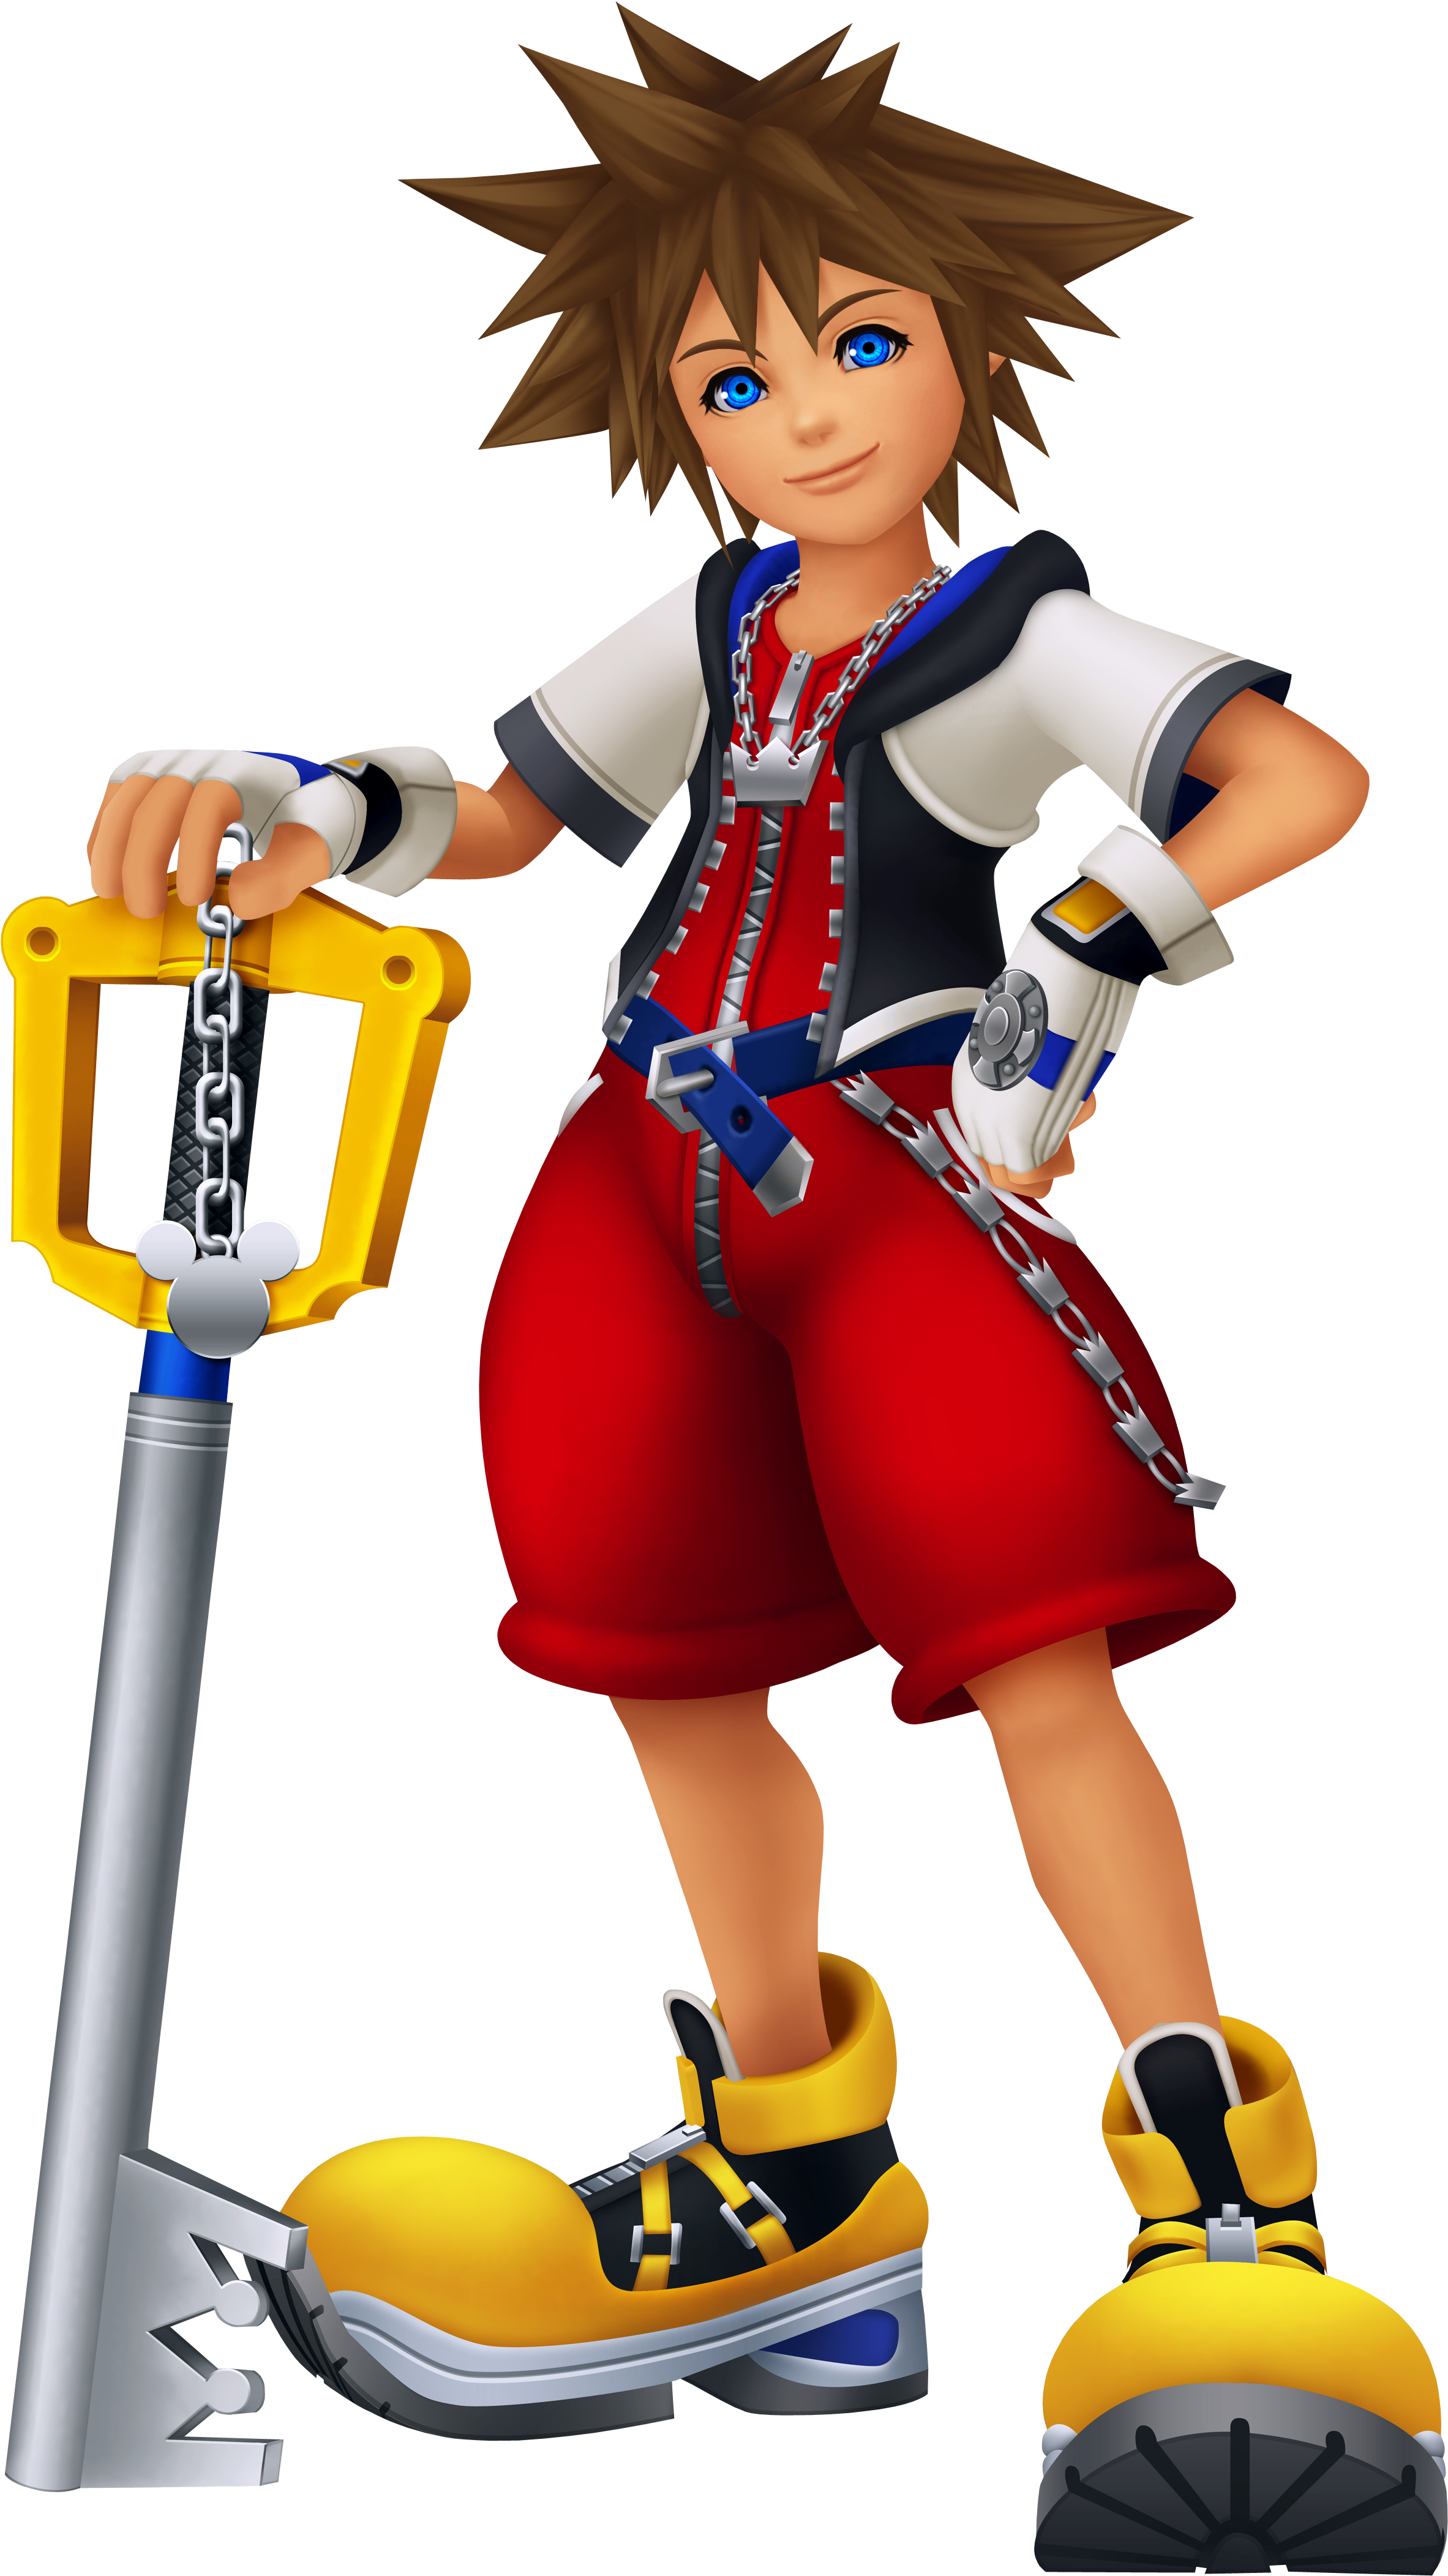 Sora Kingdom Hearts - Kingdom Hearts Re Coded Sora (2998x4380)